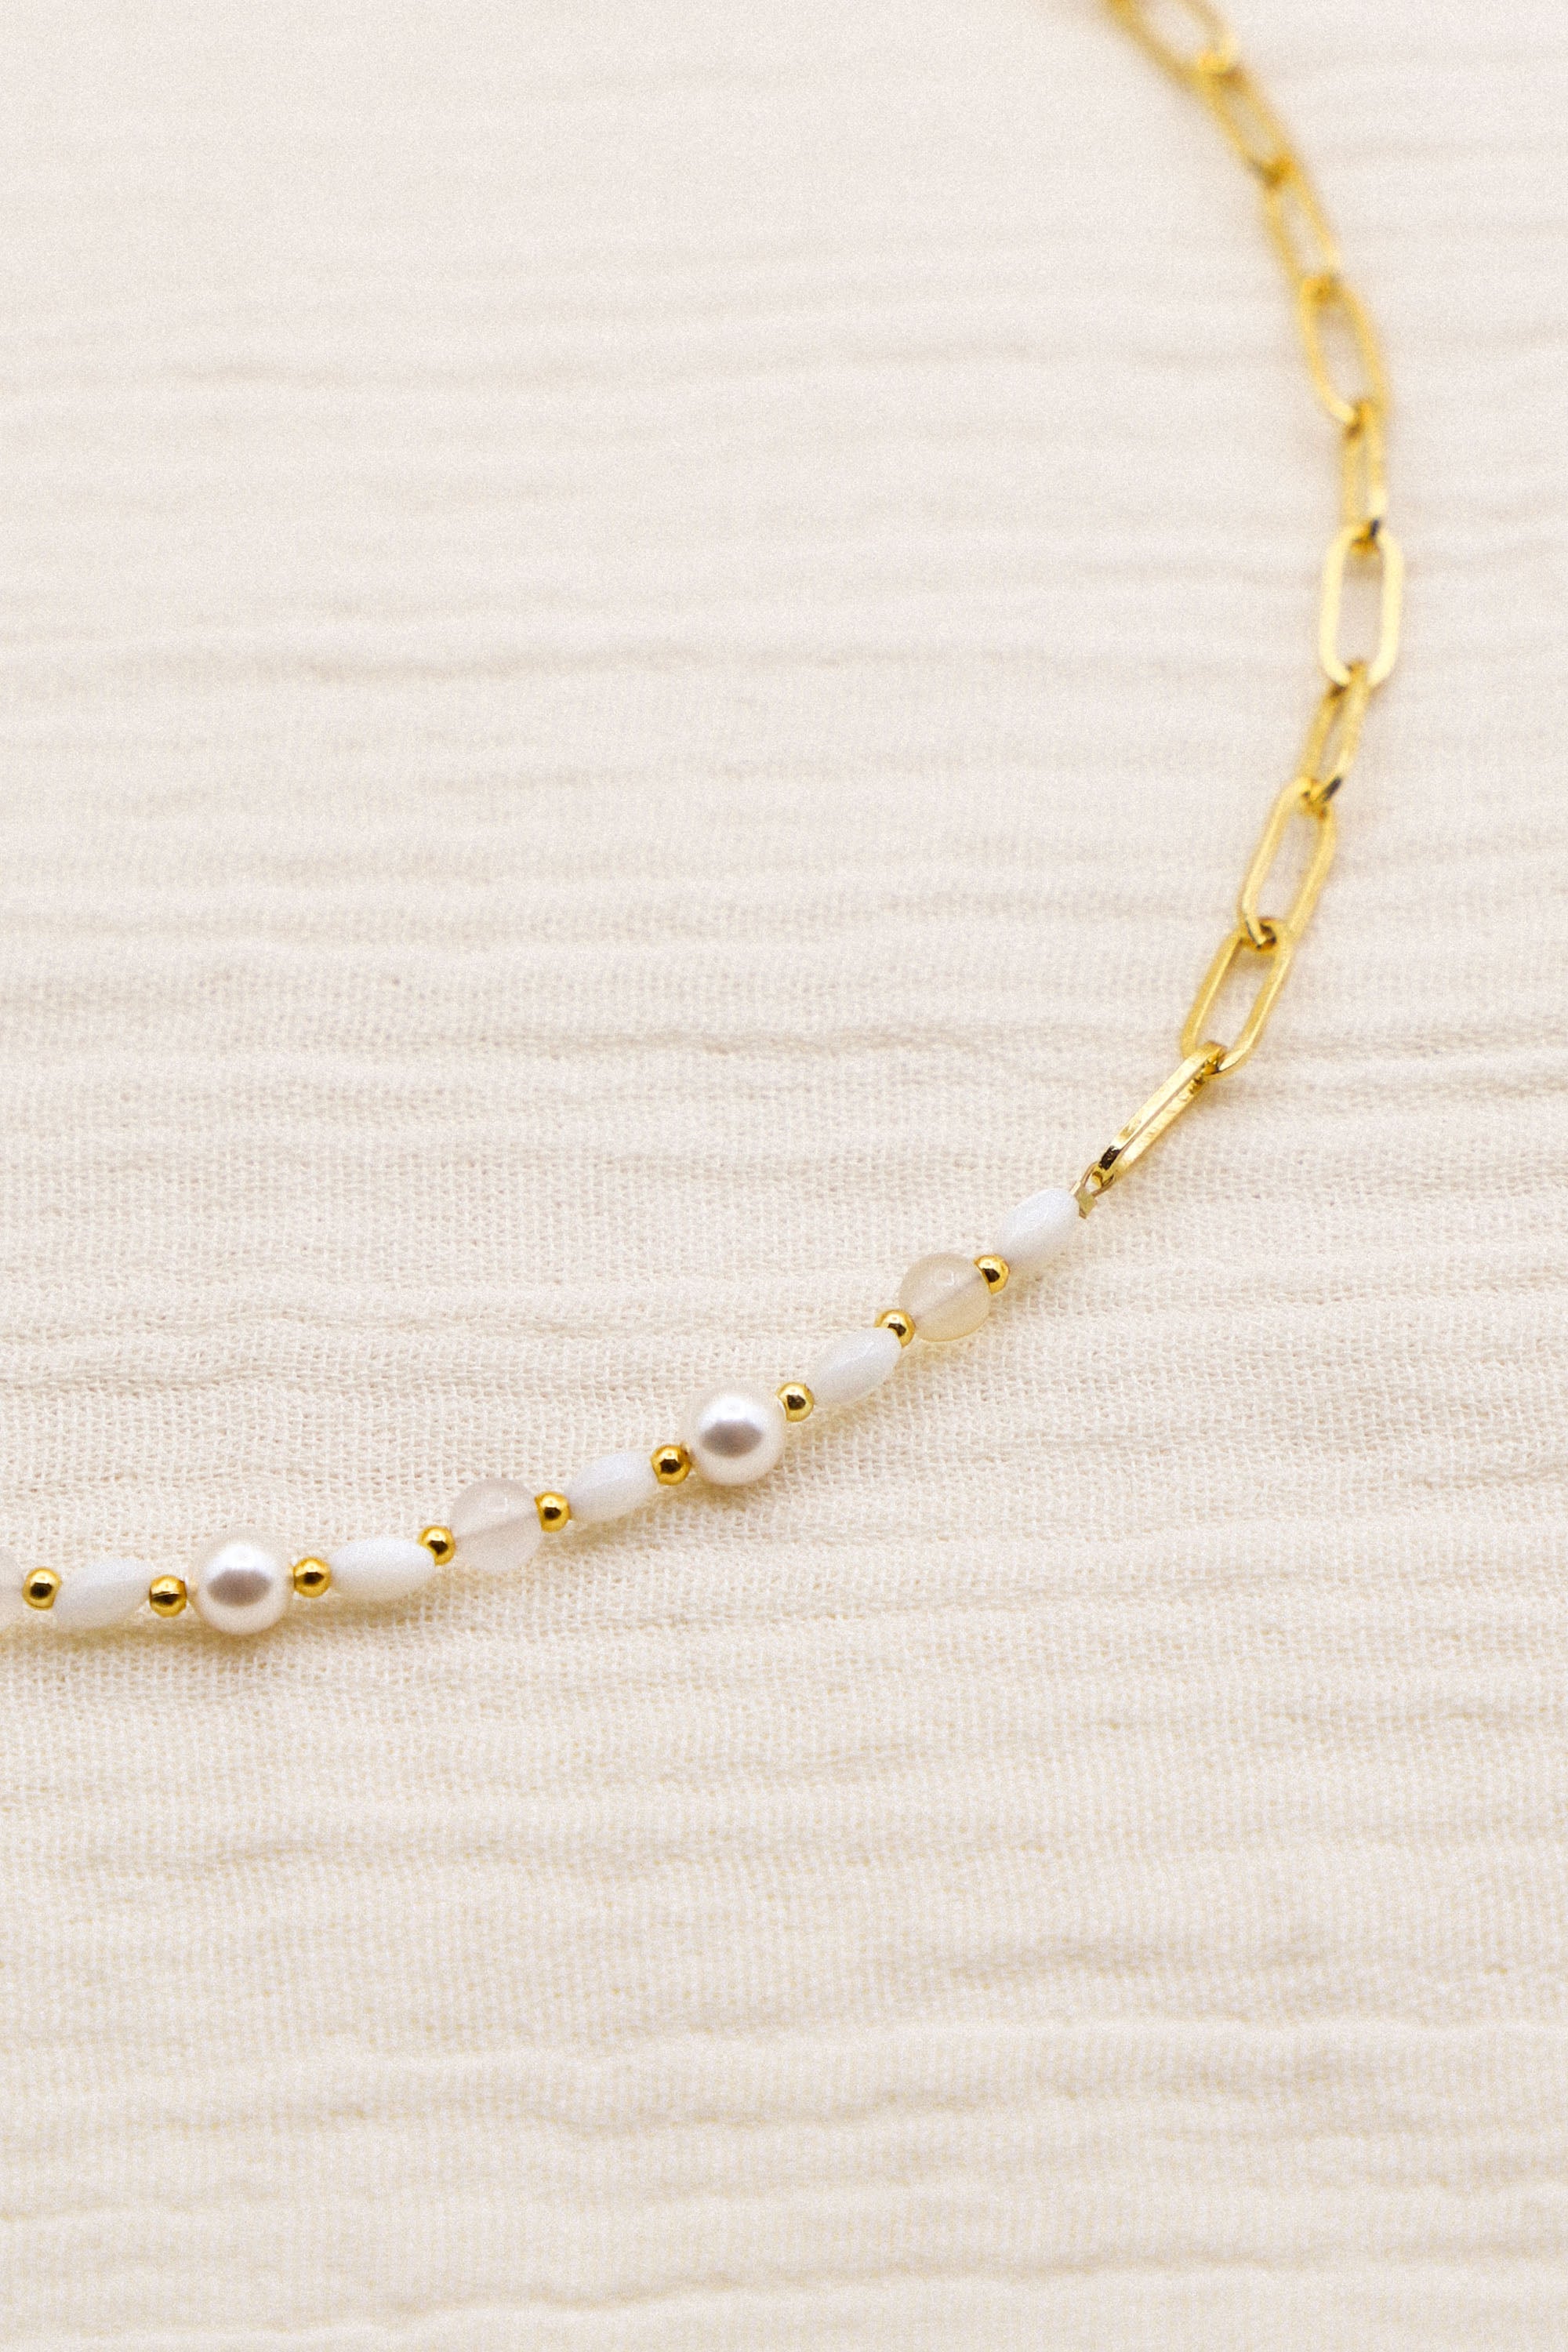 Collier Grace asymétrique, avec un côté perles et un côté chaîne. Les perles sont blanches et rythmées par de petites dorées.